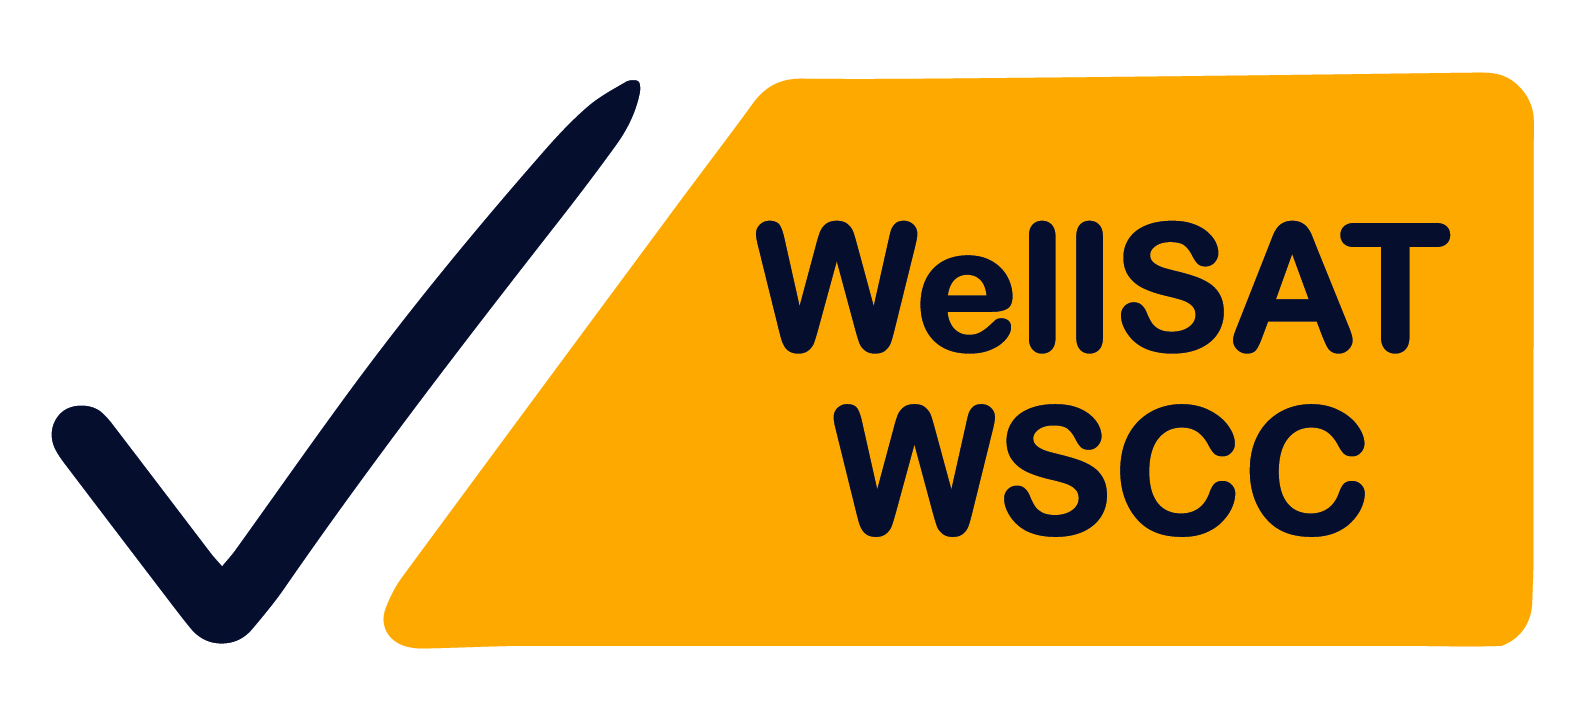 WellSAT WSCC with checkmark